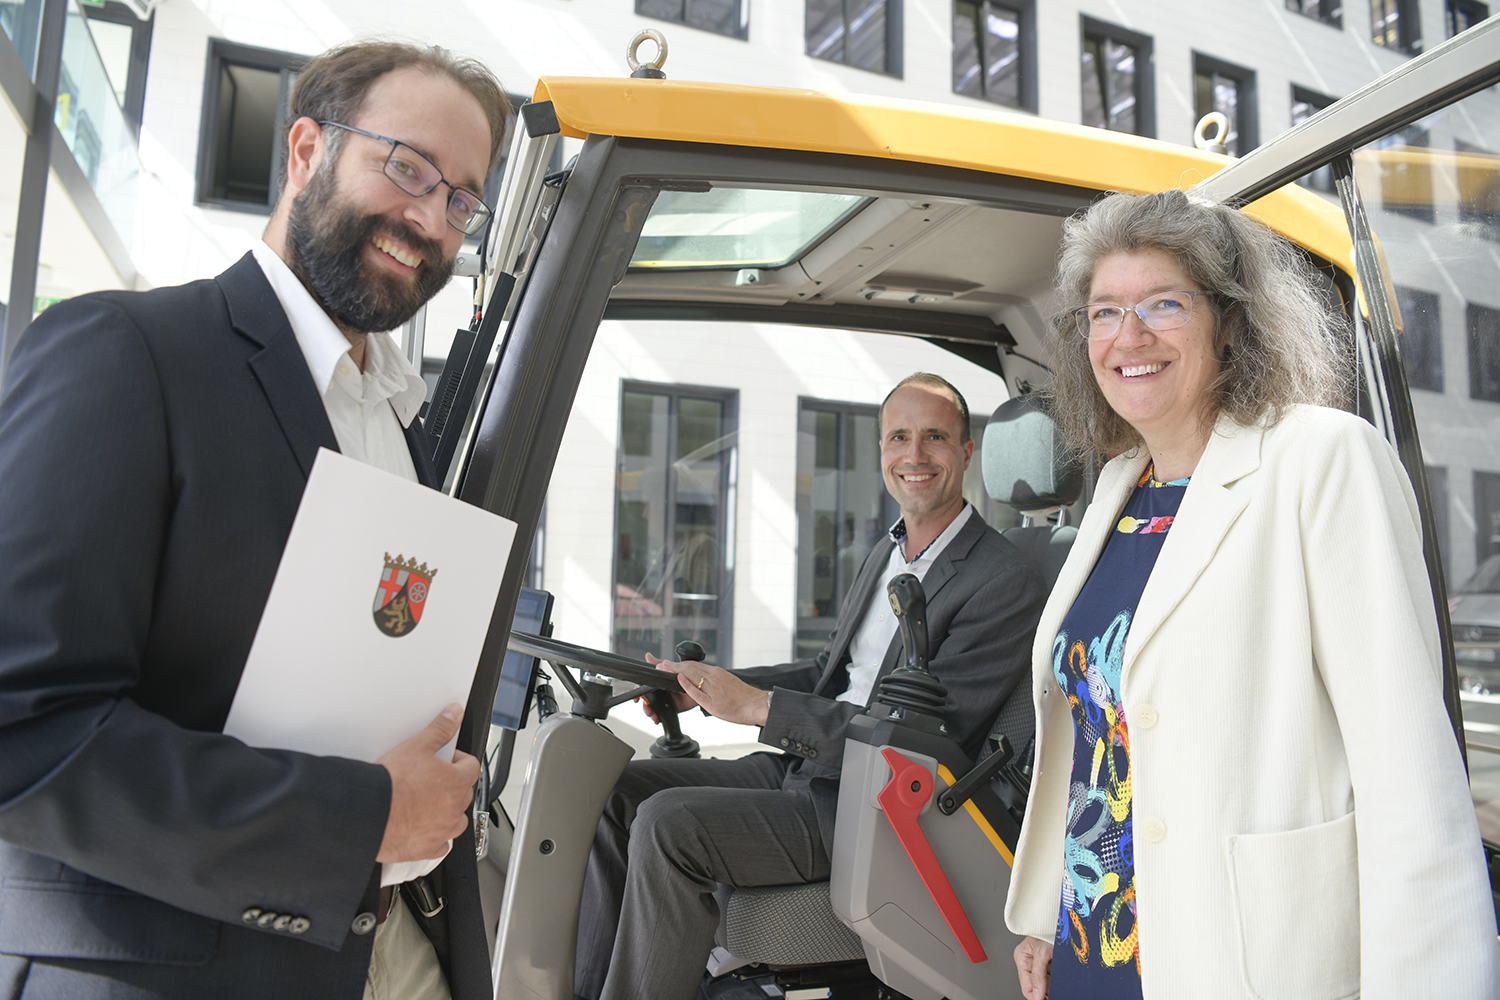 Wissenschaftsminister Clemens Hoch testet die Baggerkabine des Fahrsimulators; links Dr. Michael Burger, Koordinator des geförderten Projektes, und rechts die Leiterin des Fraunhofer ITWM, Prof. Dr. Anita Schöbel. 